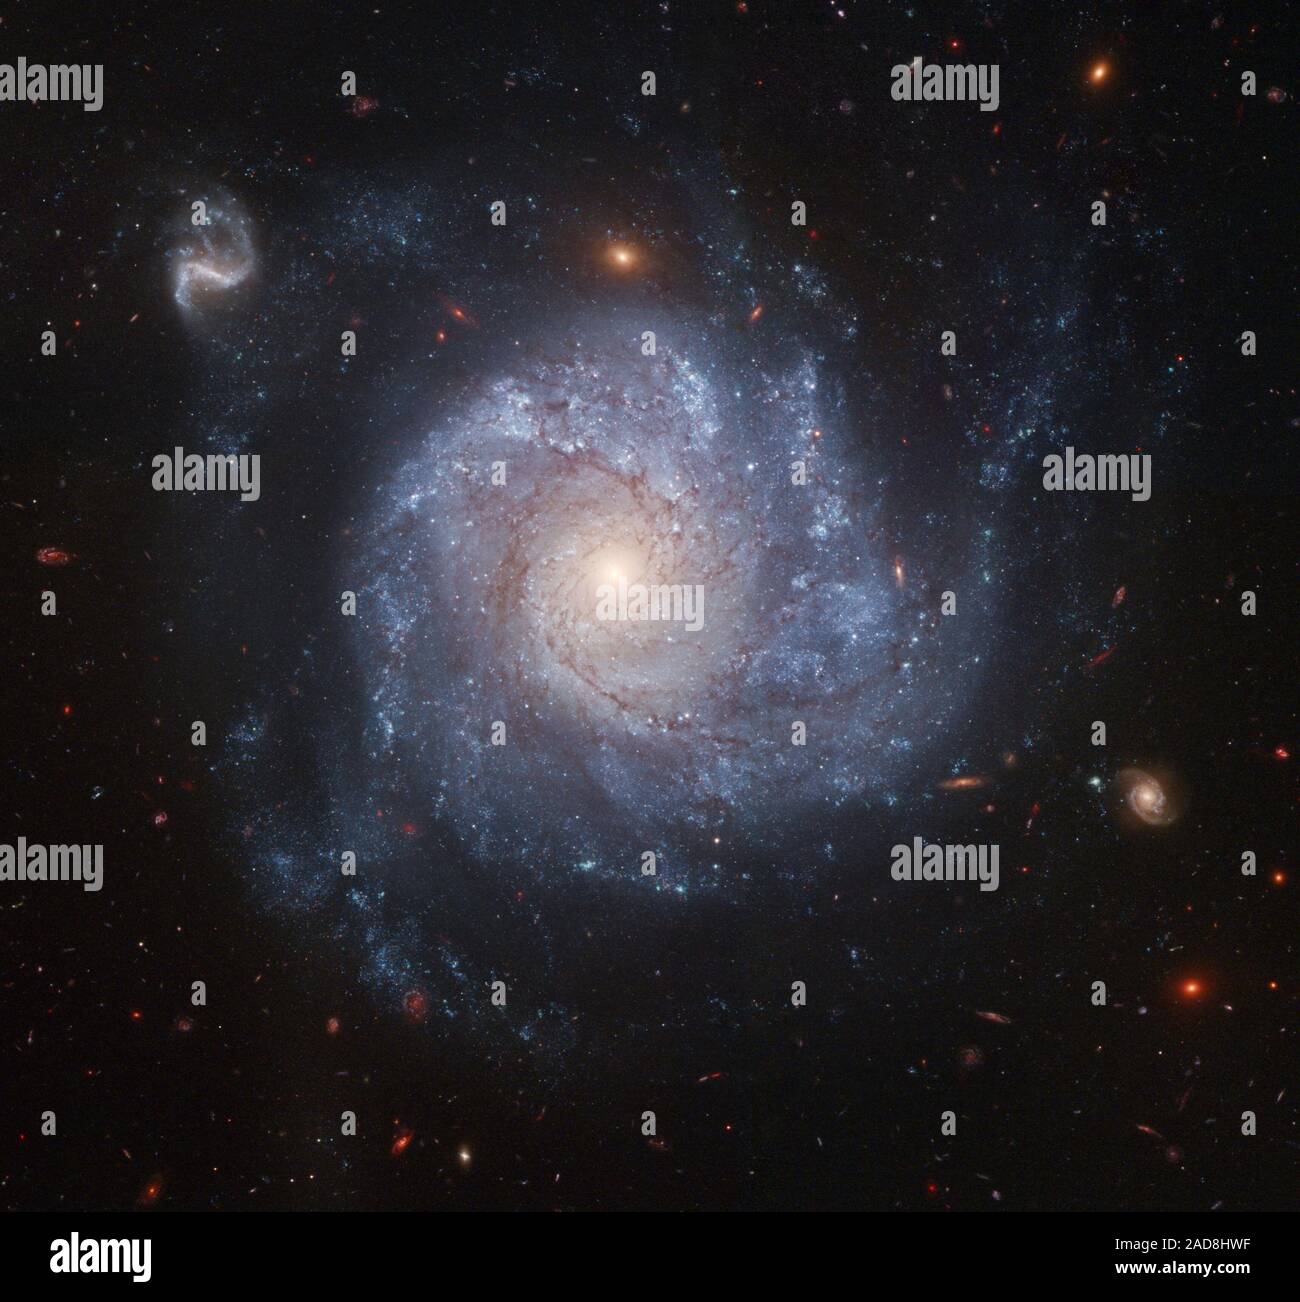 Diese dramatische Spiralgalaxie wie Pinwheel bereit gesetzt sein, damit eine Spinnerei von einer sanften Brise eines Kindes, ist eine der neuesten angesehen durch die NASA-Hubble-Weltraumteleskop. Atemberaubende Details des Gesichts - auf Spiralgalaxie, katalogisiert als NGC 1309, sind in dieser Farbe Bild aufgenommen. Beobachtungen der Galaxie im sichtbaren und infraroten Licht genommen kommen zusammen in eine bunte Darstellung der vielen Funktionen des Galaxy. Helle blaue Bereiche der Sternentstehung Pfeffer die Spiralarme, während rötlichen Staub Gassen die spiralförmige Struktur in eine gelbliche zentrale Nukleus der älteren Bevölkerung Sterne folgen. Das Bild ist Stockfoto